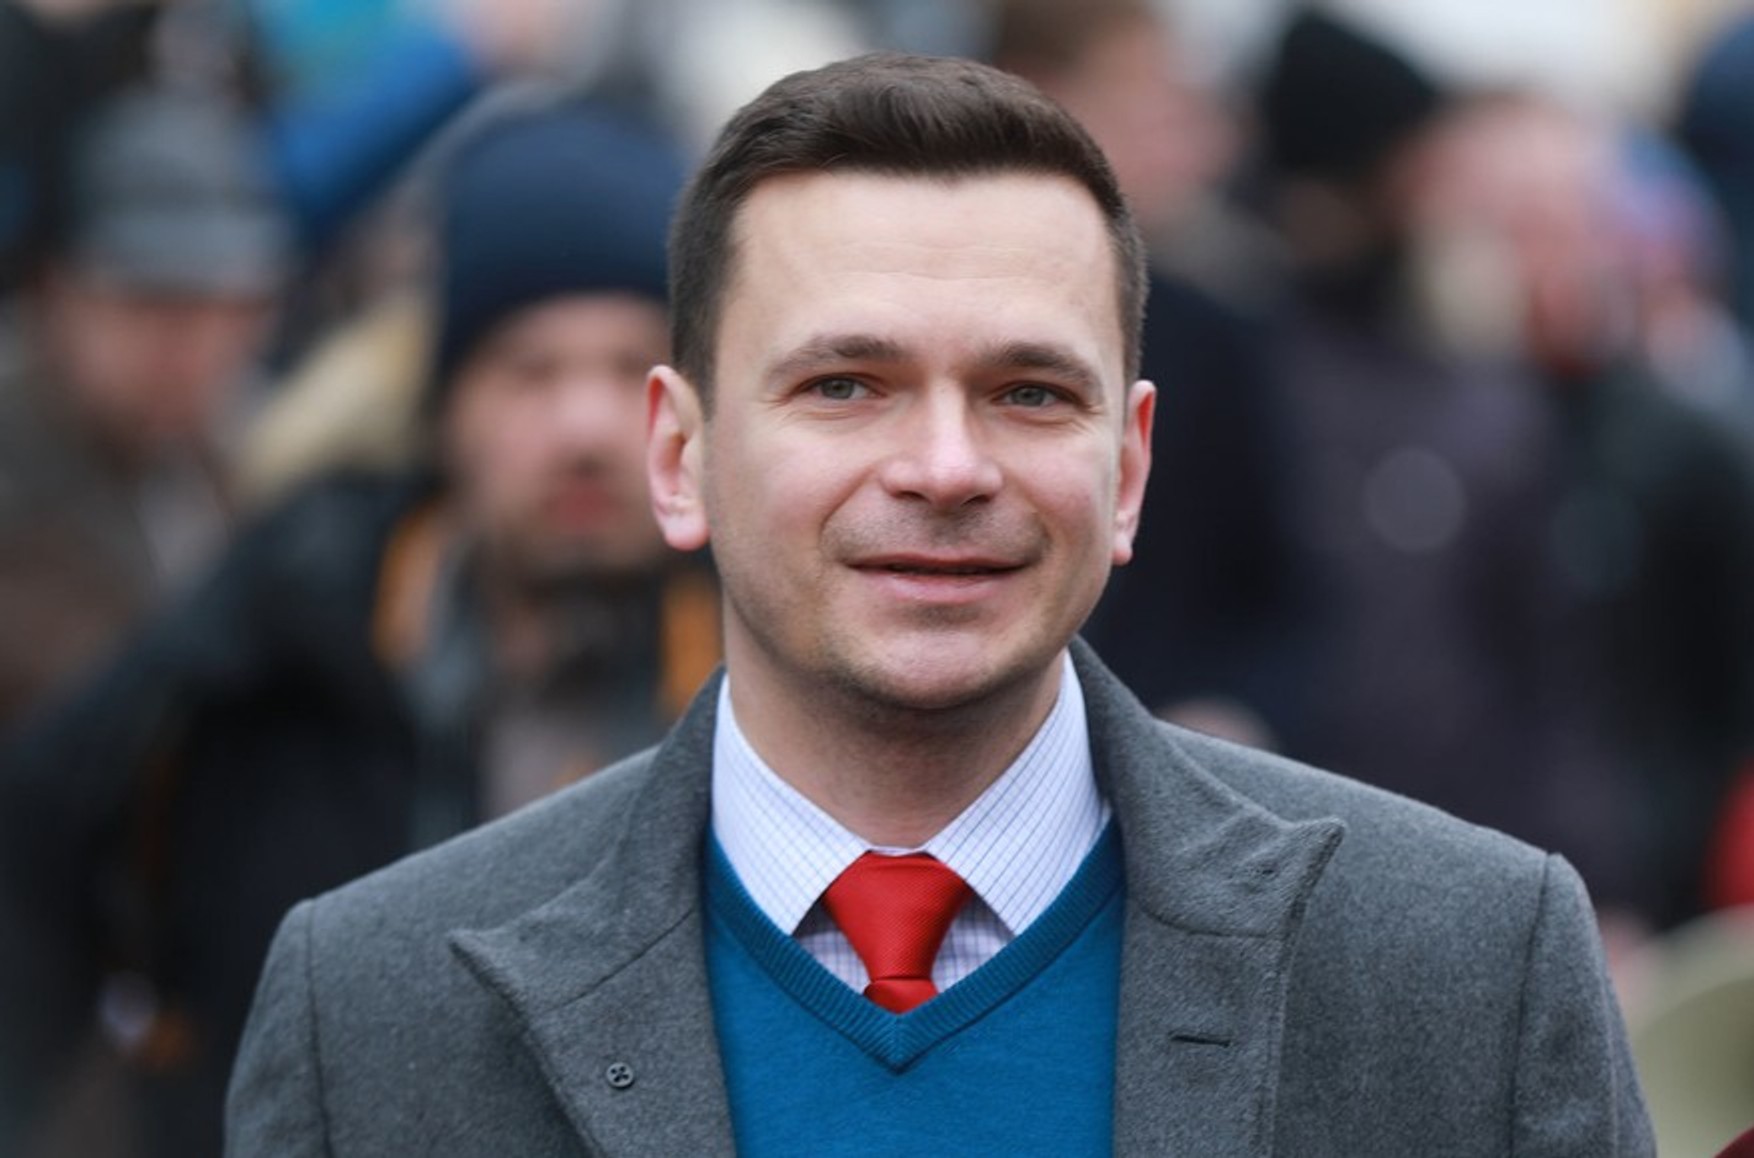 Ілля Яшин заявив про відхід з поста голови Ради депутатів Красносільського району через політичний тиск